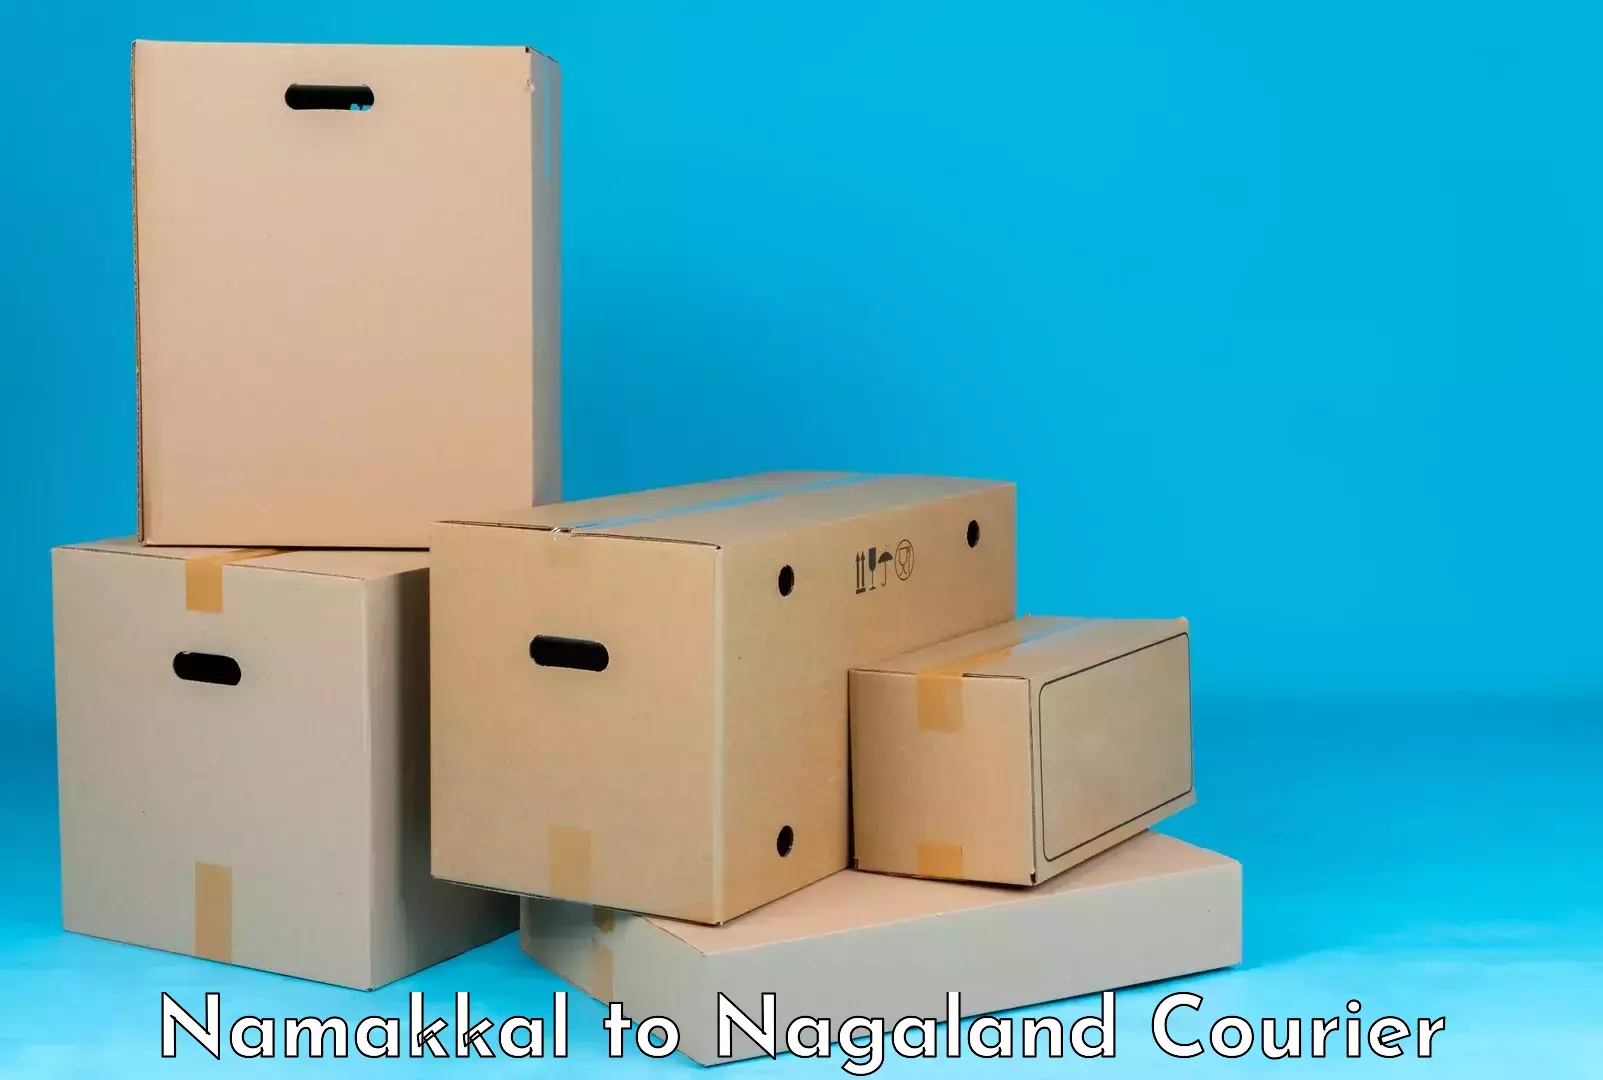 Luggage forwarding service Namakkal to NIT Nagaland